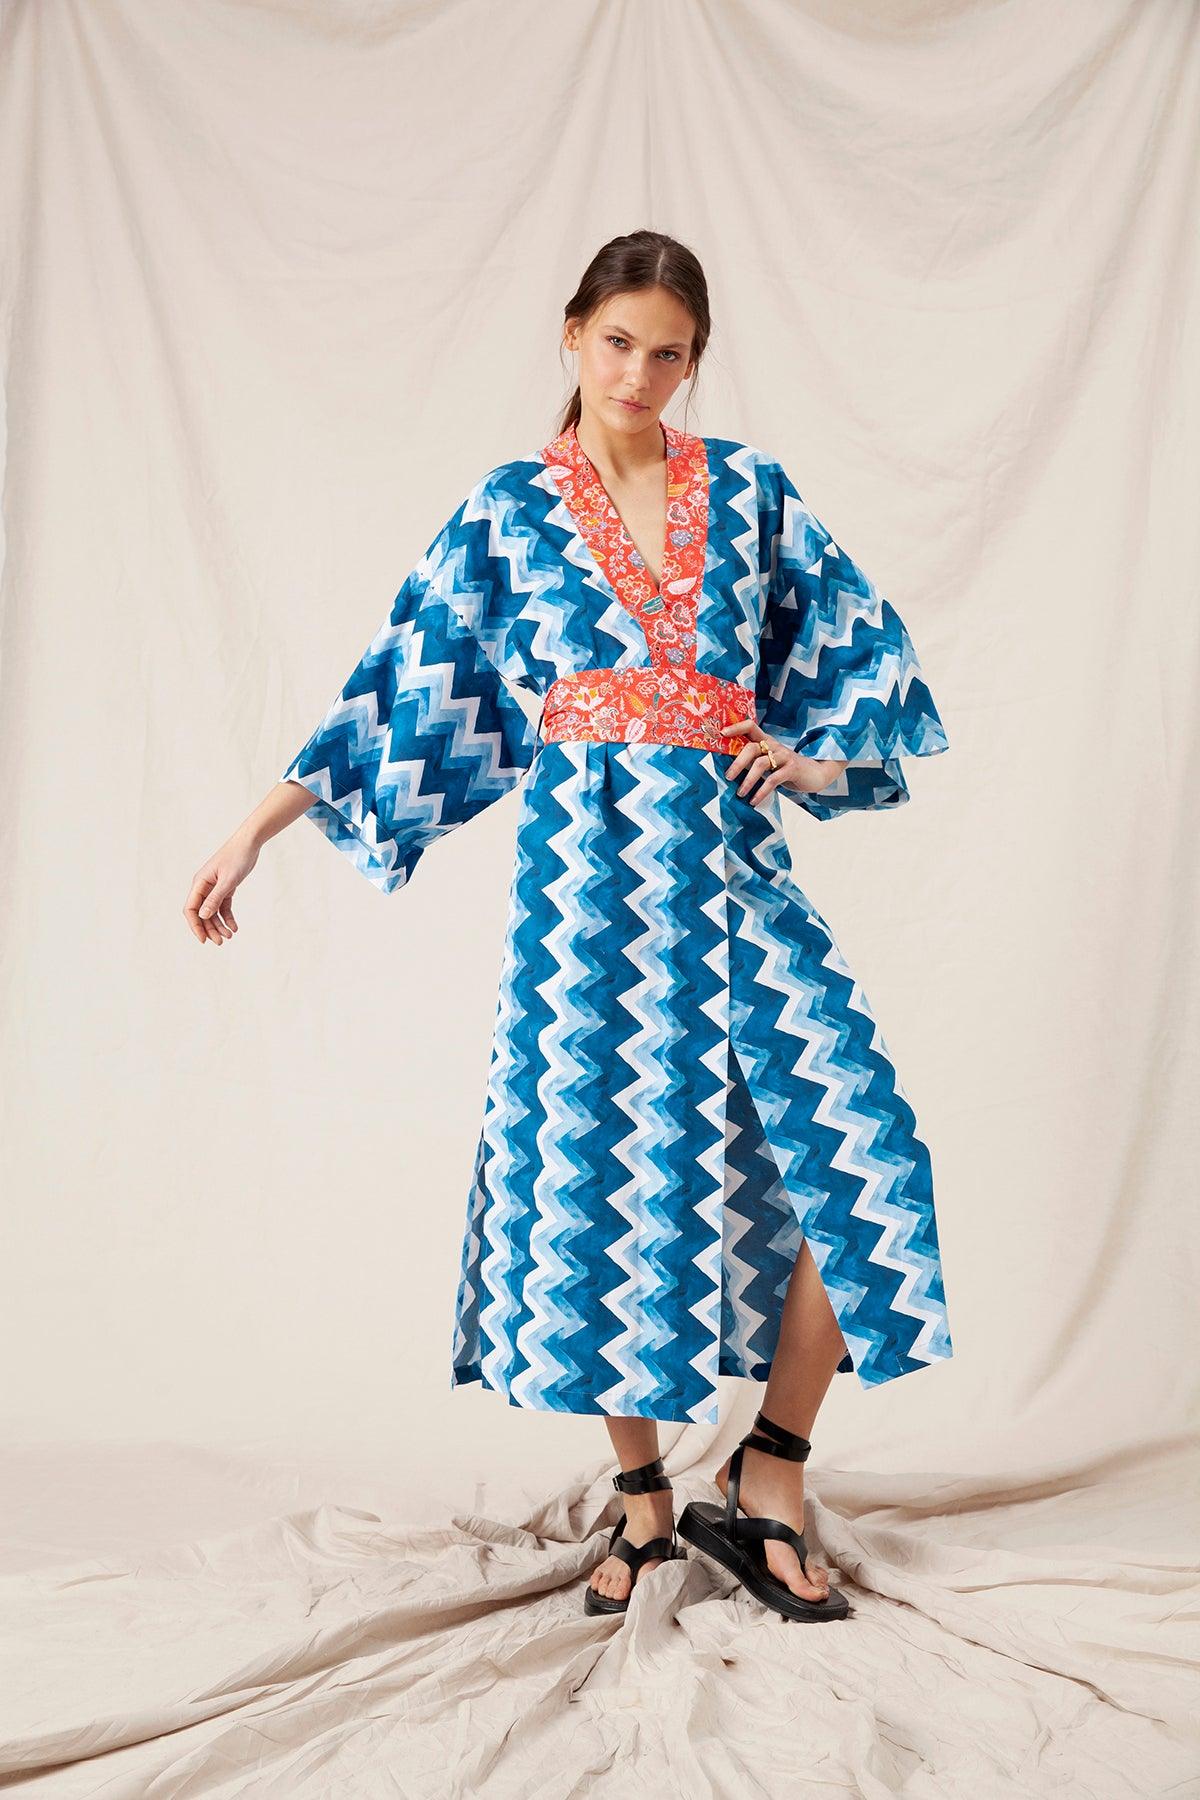 Althea Kimono by Ladiesse